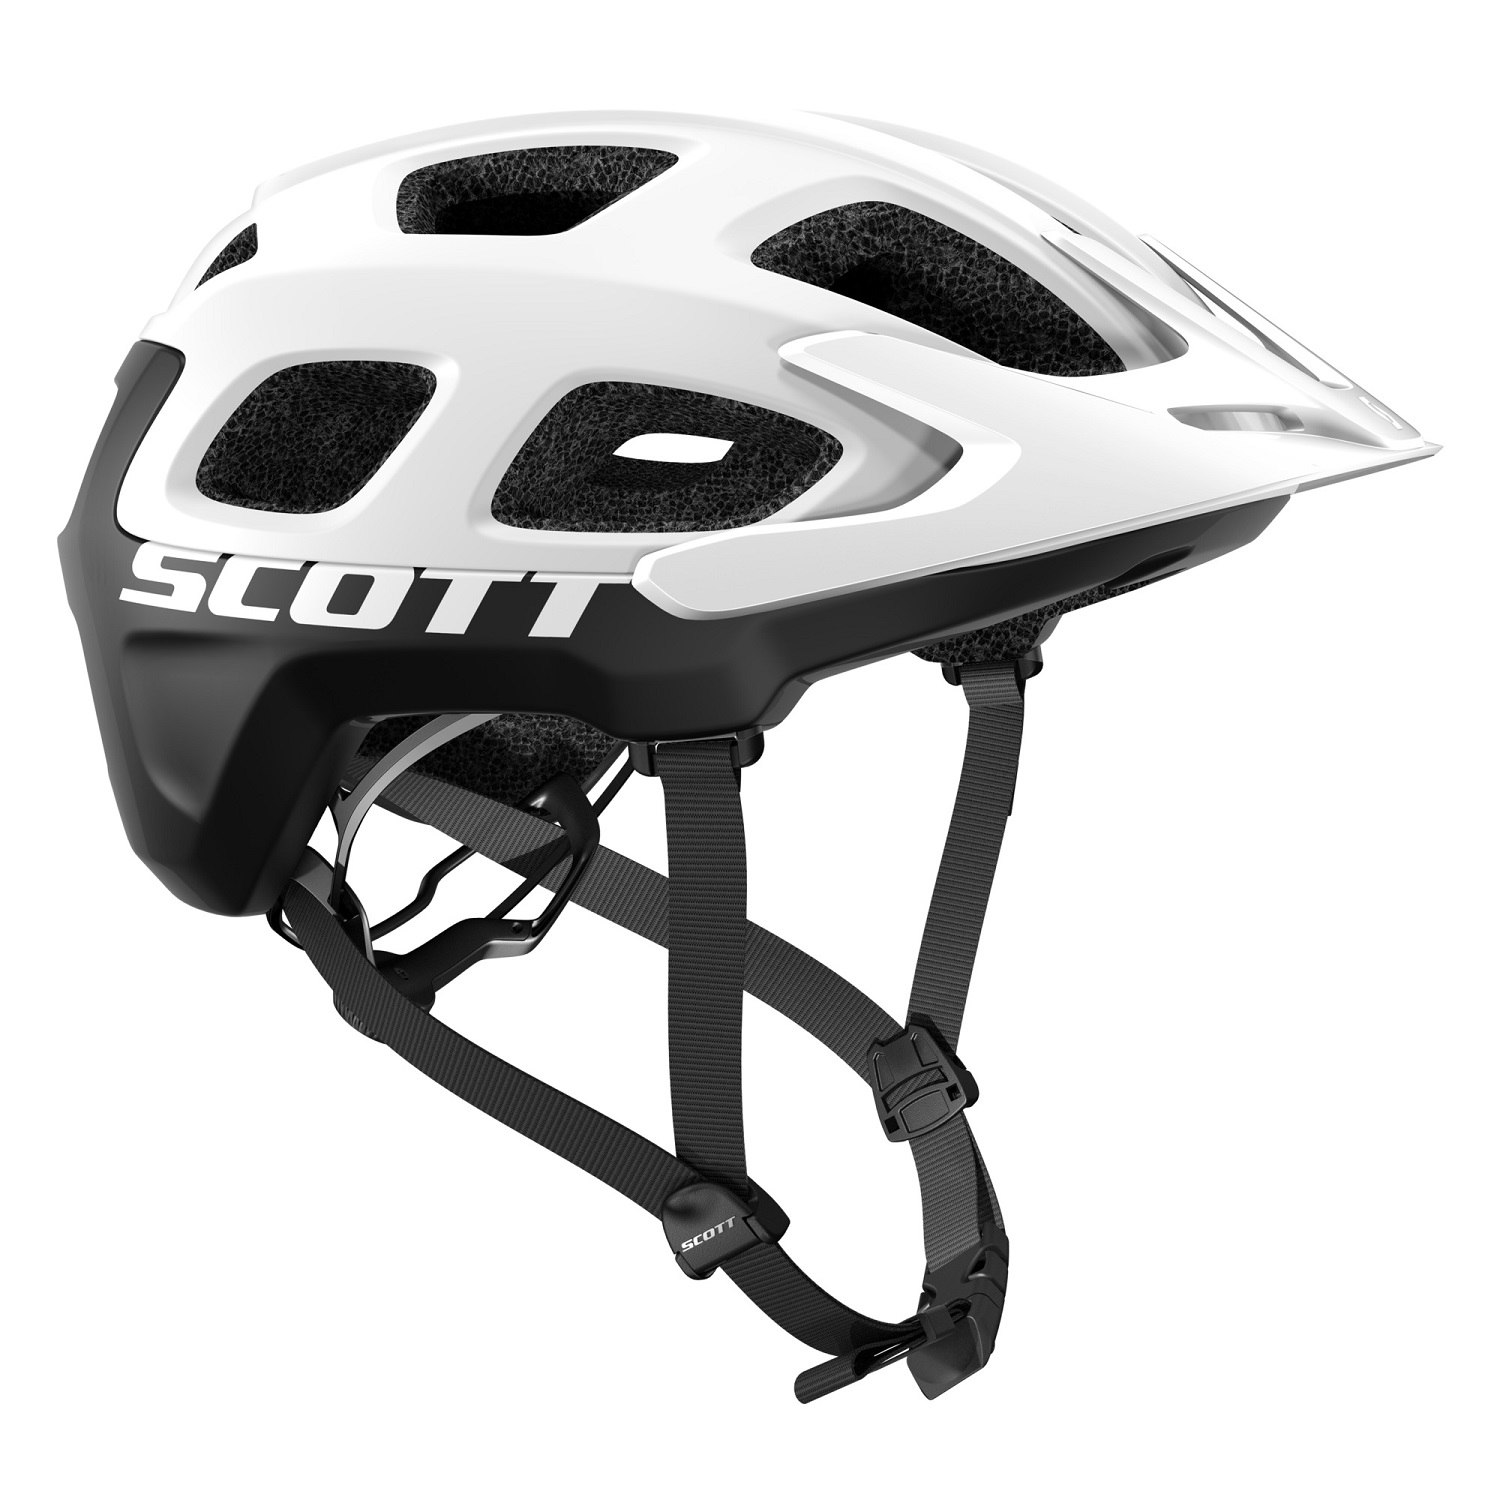 Produktbild von SCOTT Vivo (CE) Helm - white/black